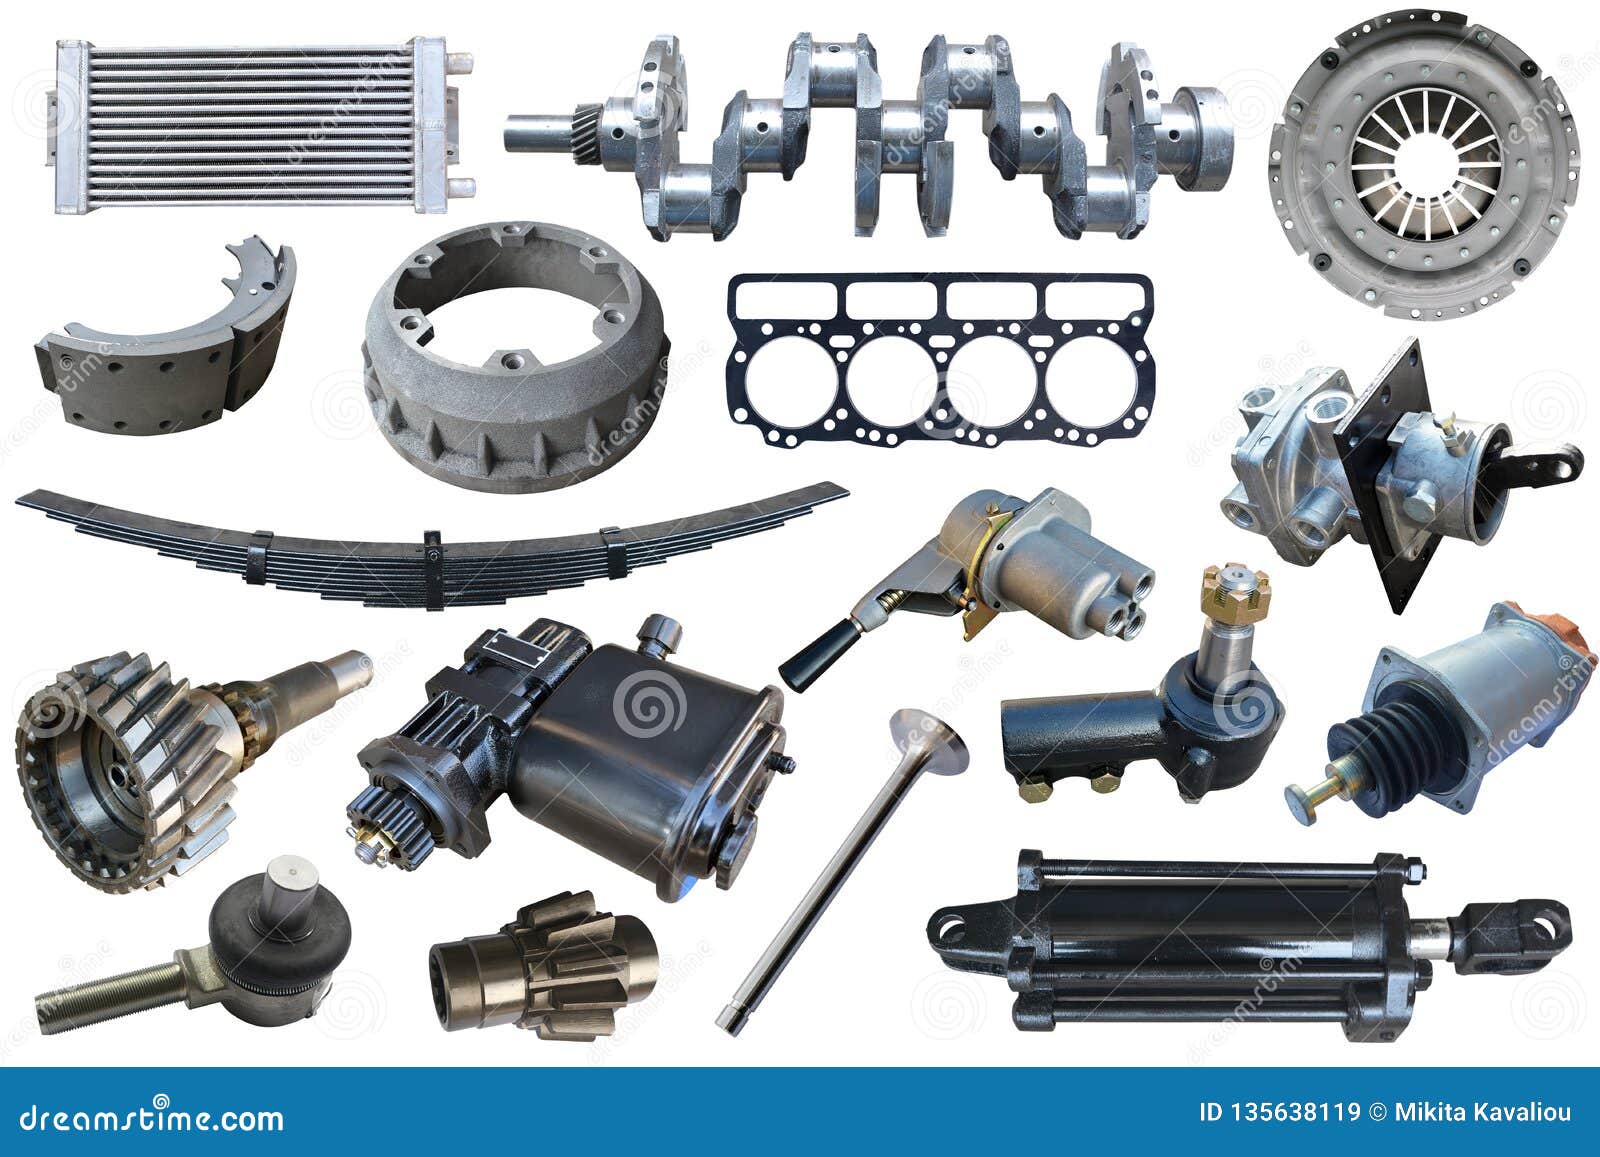 Automobile Spare Parts Pictures Reviewmotors Co